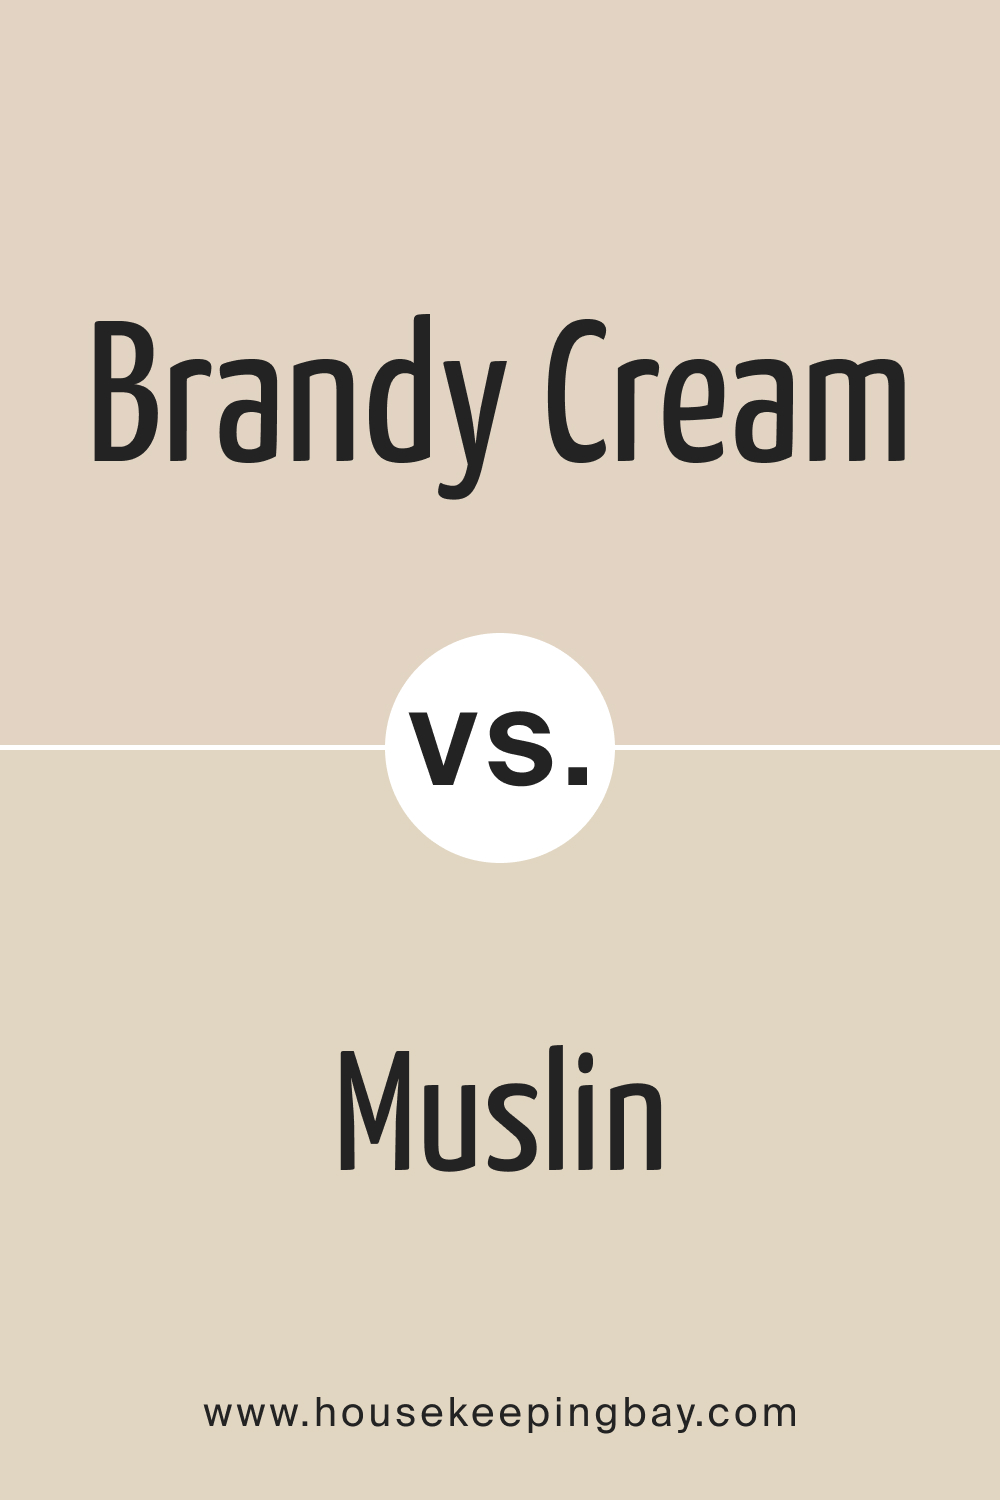 Brandy Cream OC 4 vs. OC 12 Muslin